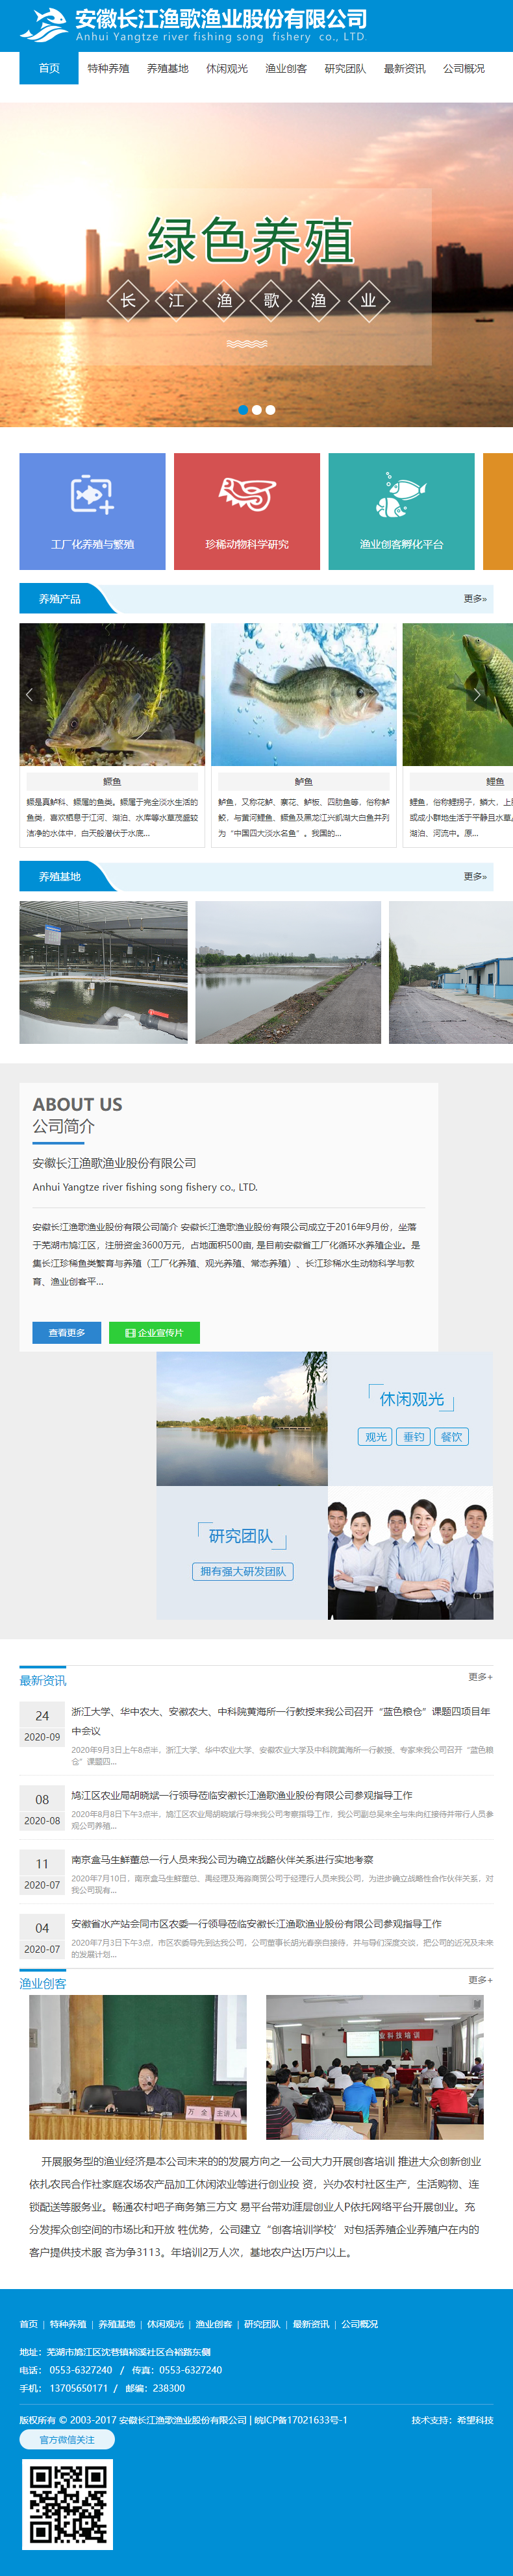 安徽长江渔歌渔业股份有限公司网站案例